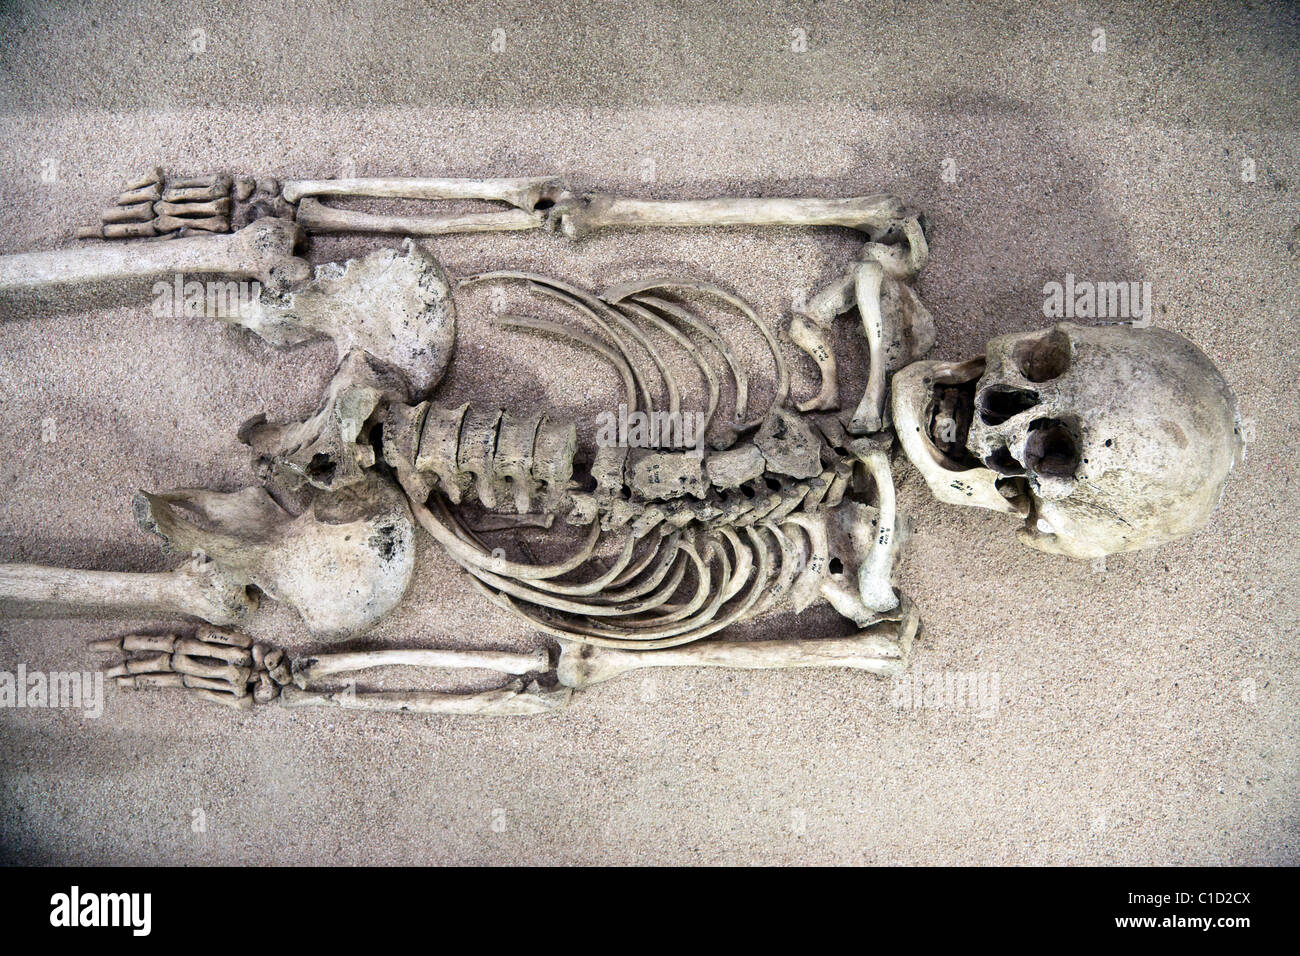 Skelett Ausgegraben Aus Pre Columbian Grab Angezeigt Im Museum Im Archaologischen Ruinen Der Alten Zapotecl Stadt Von Monte Alban Stockfotografie Alamy